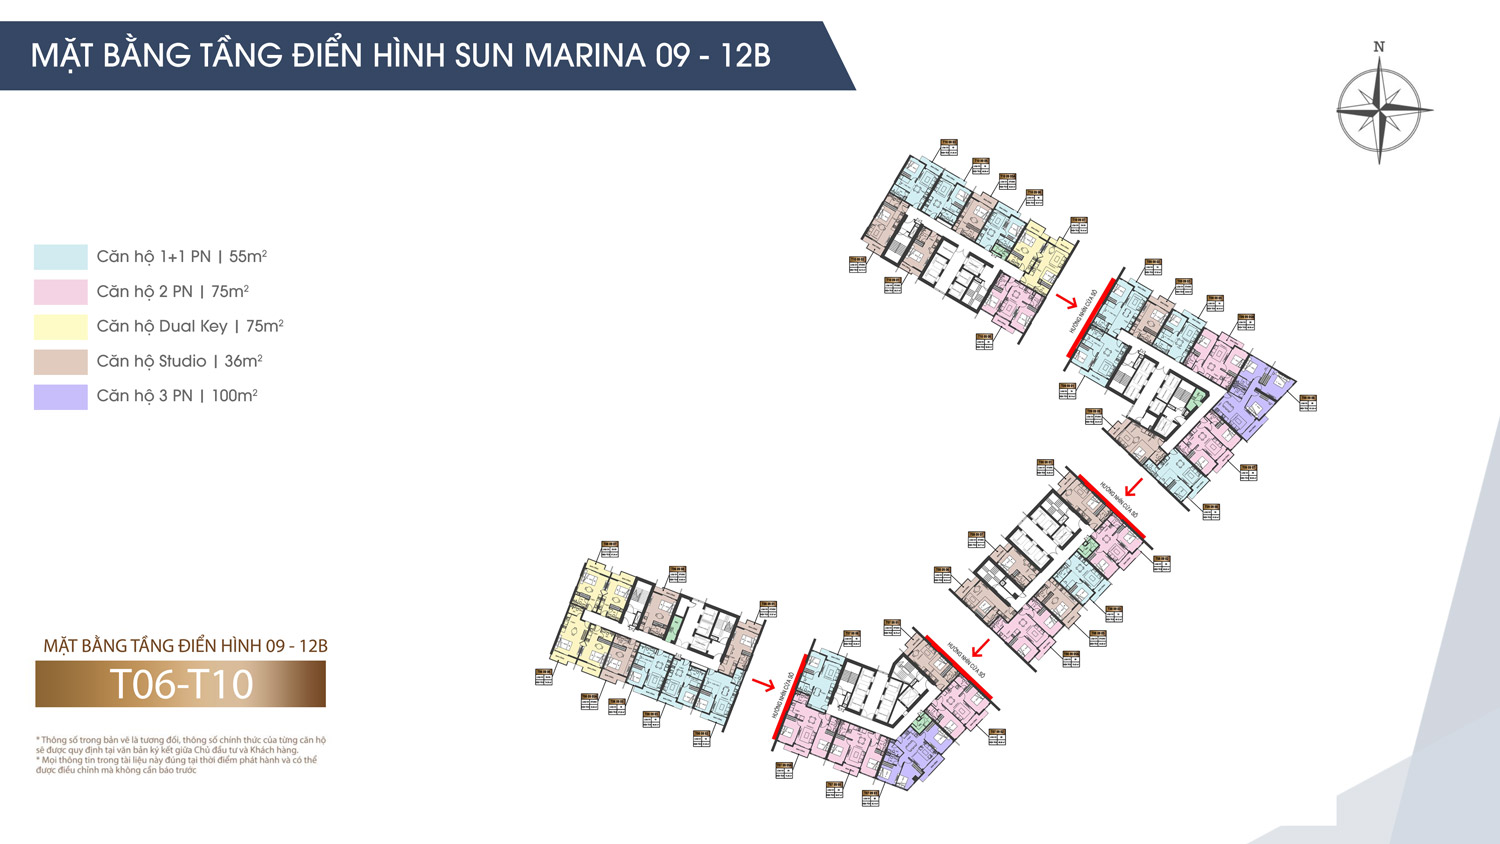 Sun Marina Town Mặt Bằng Tòa B 09-12B